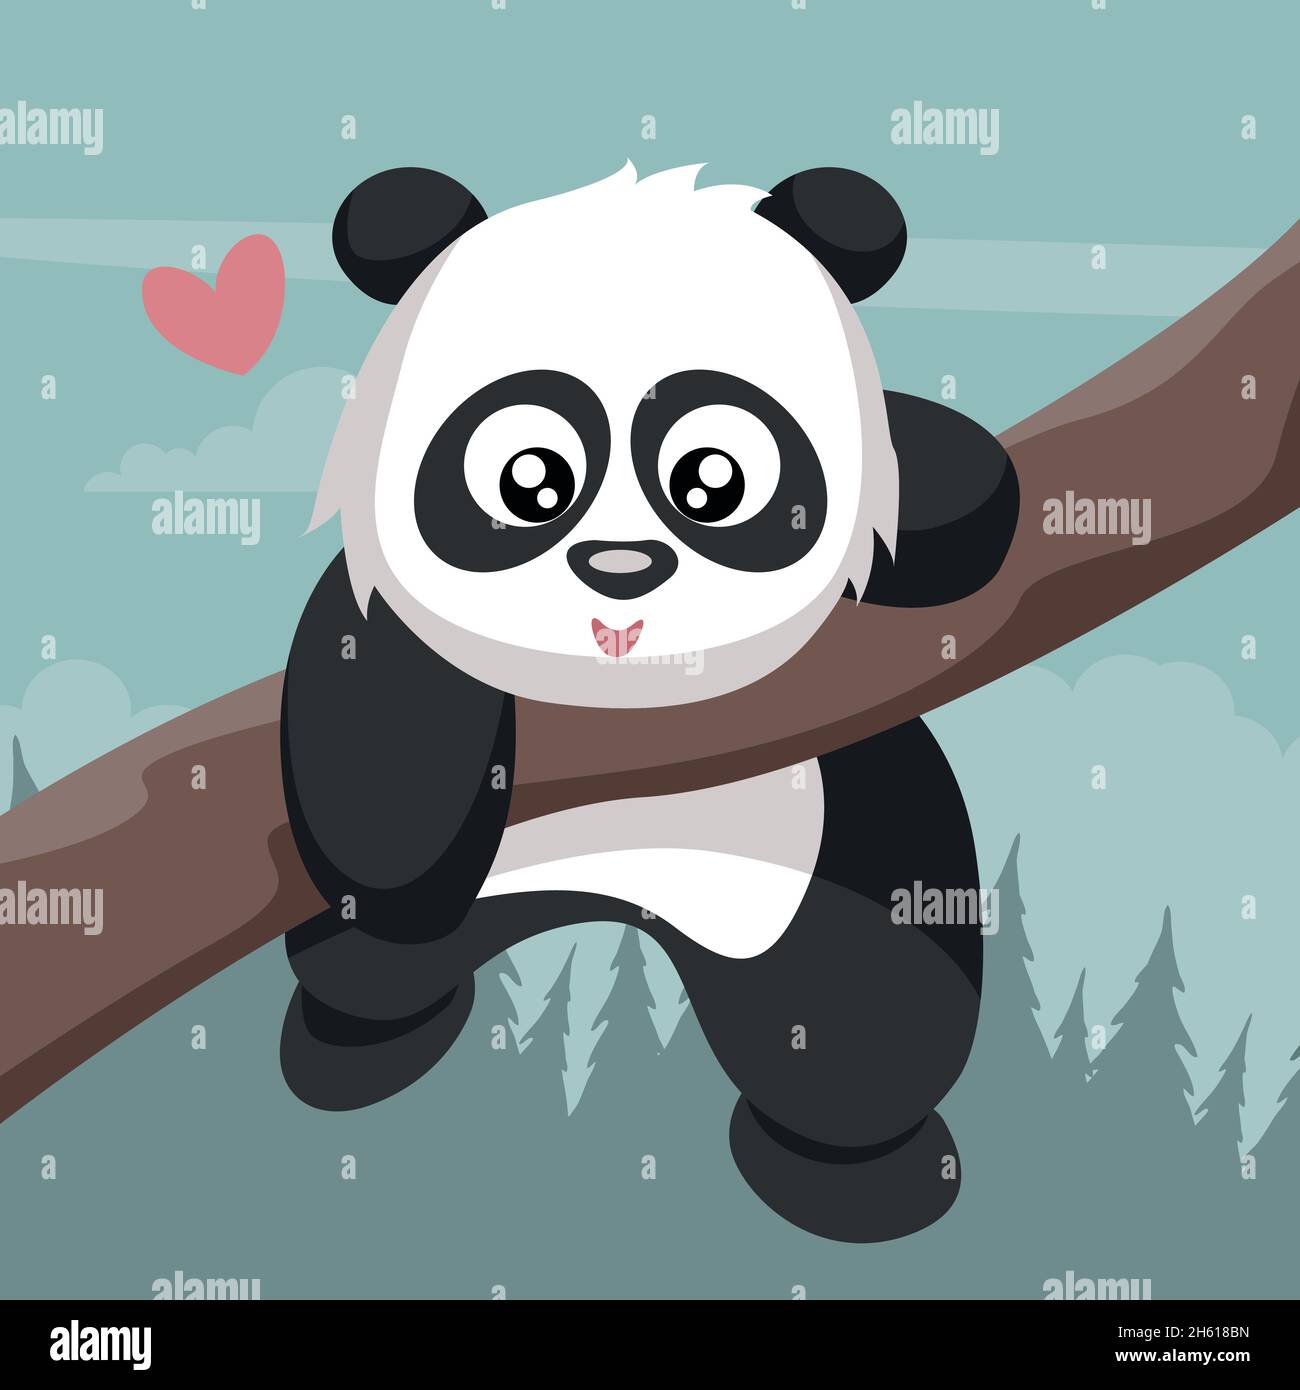 Vinilos infantiles oso panda y rama árbol